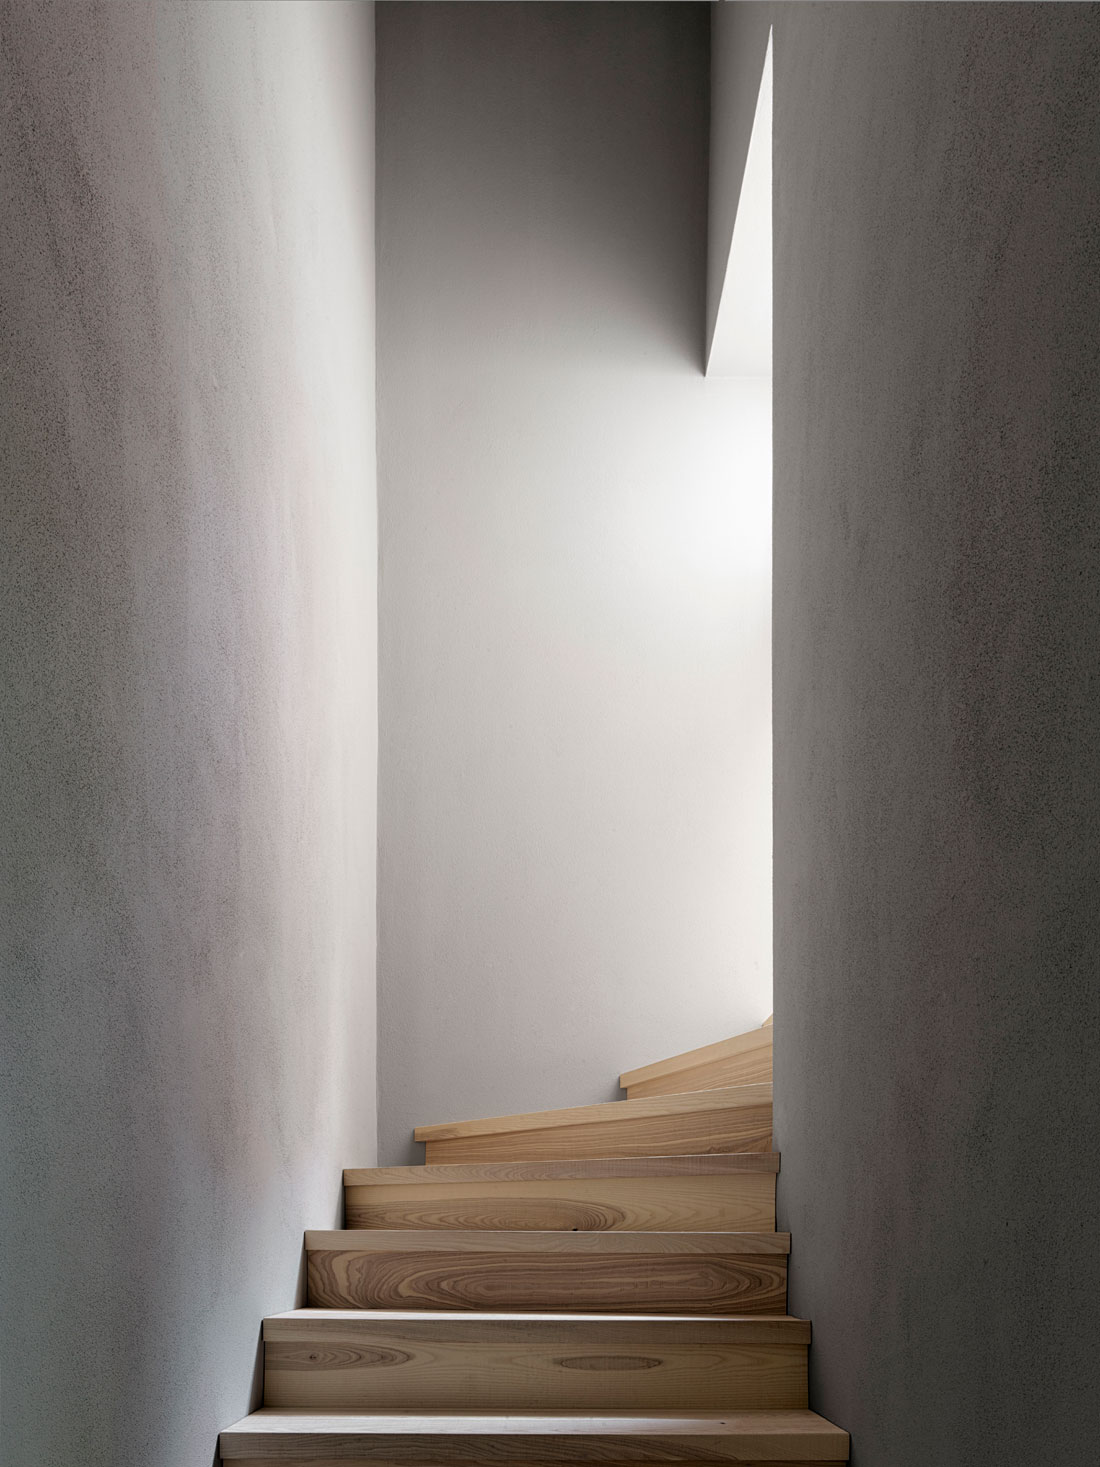 Staircase Design by Innauer-Matt Architects